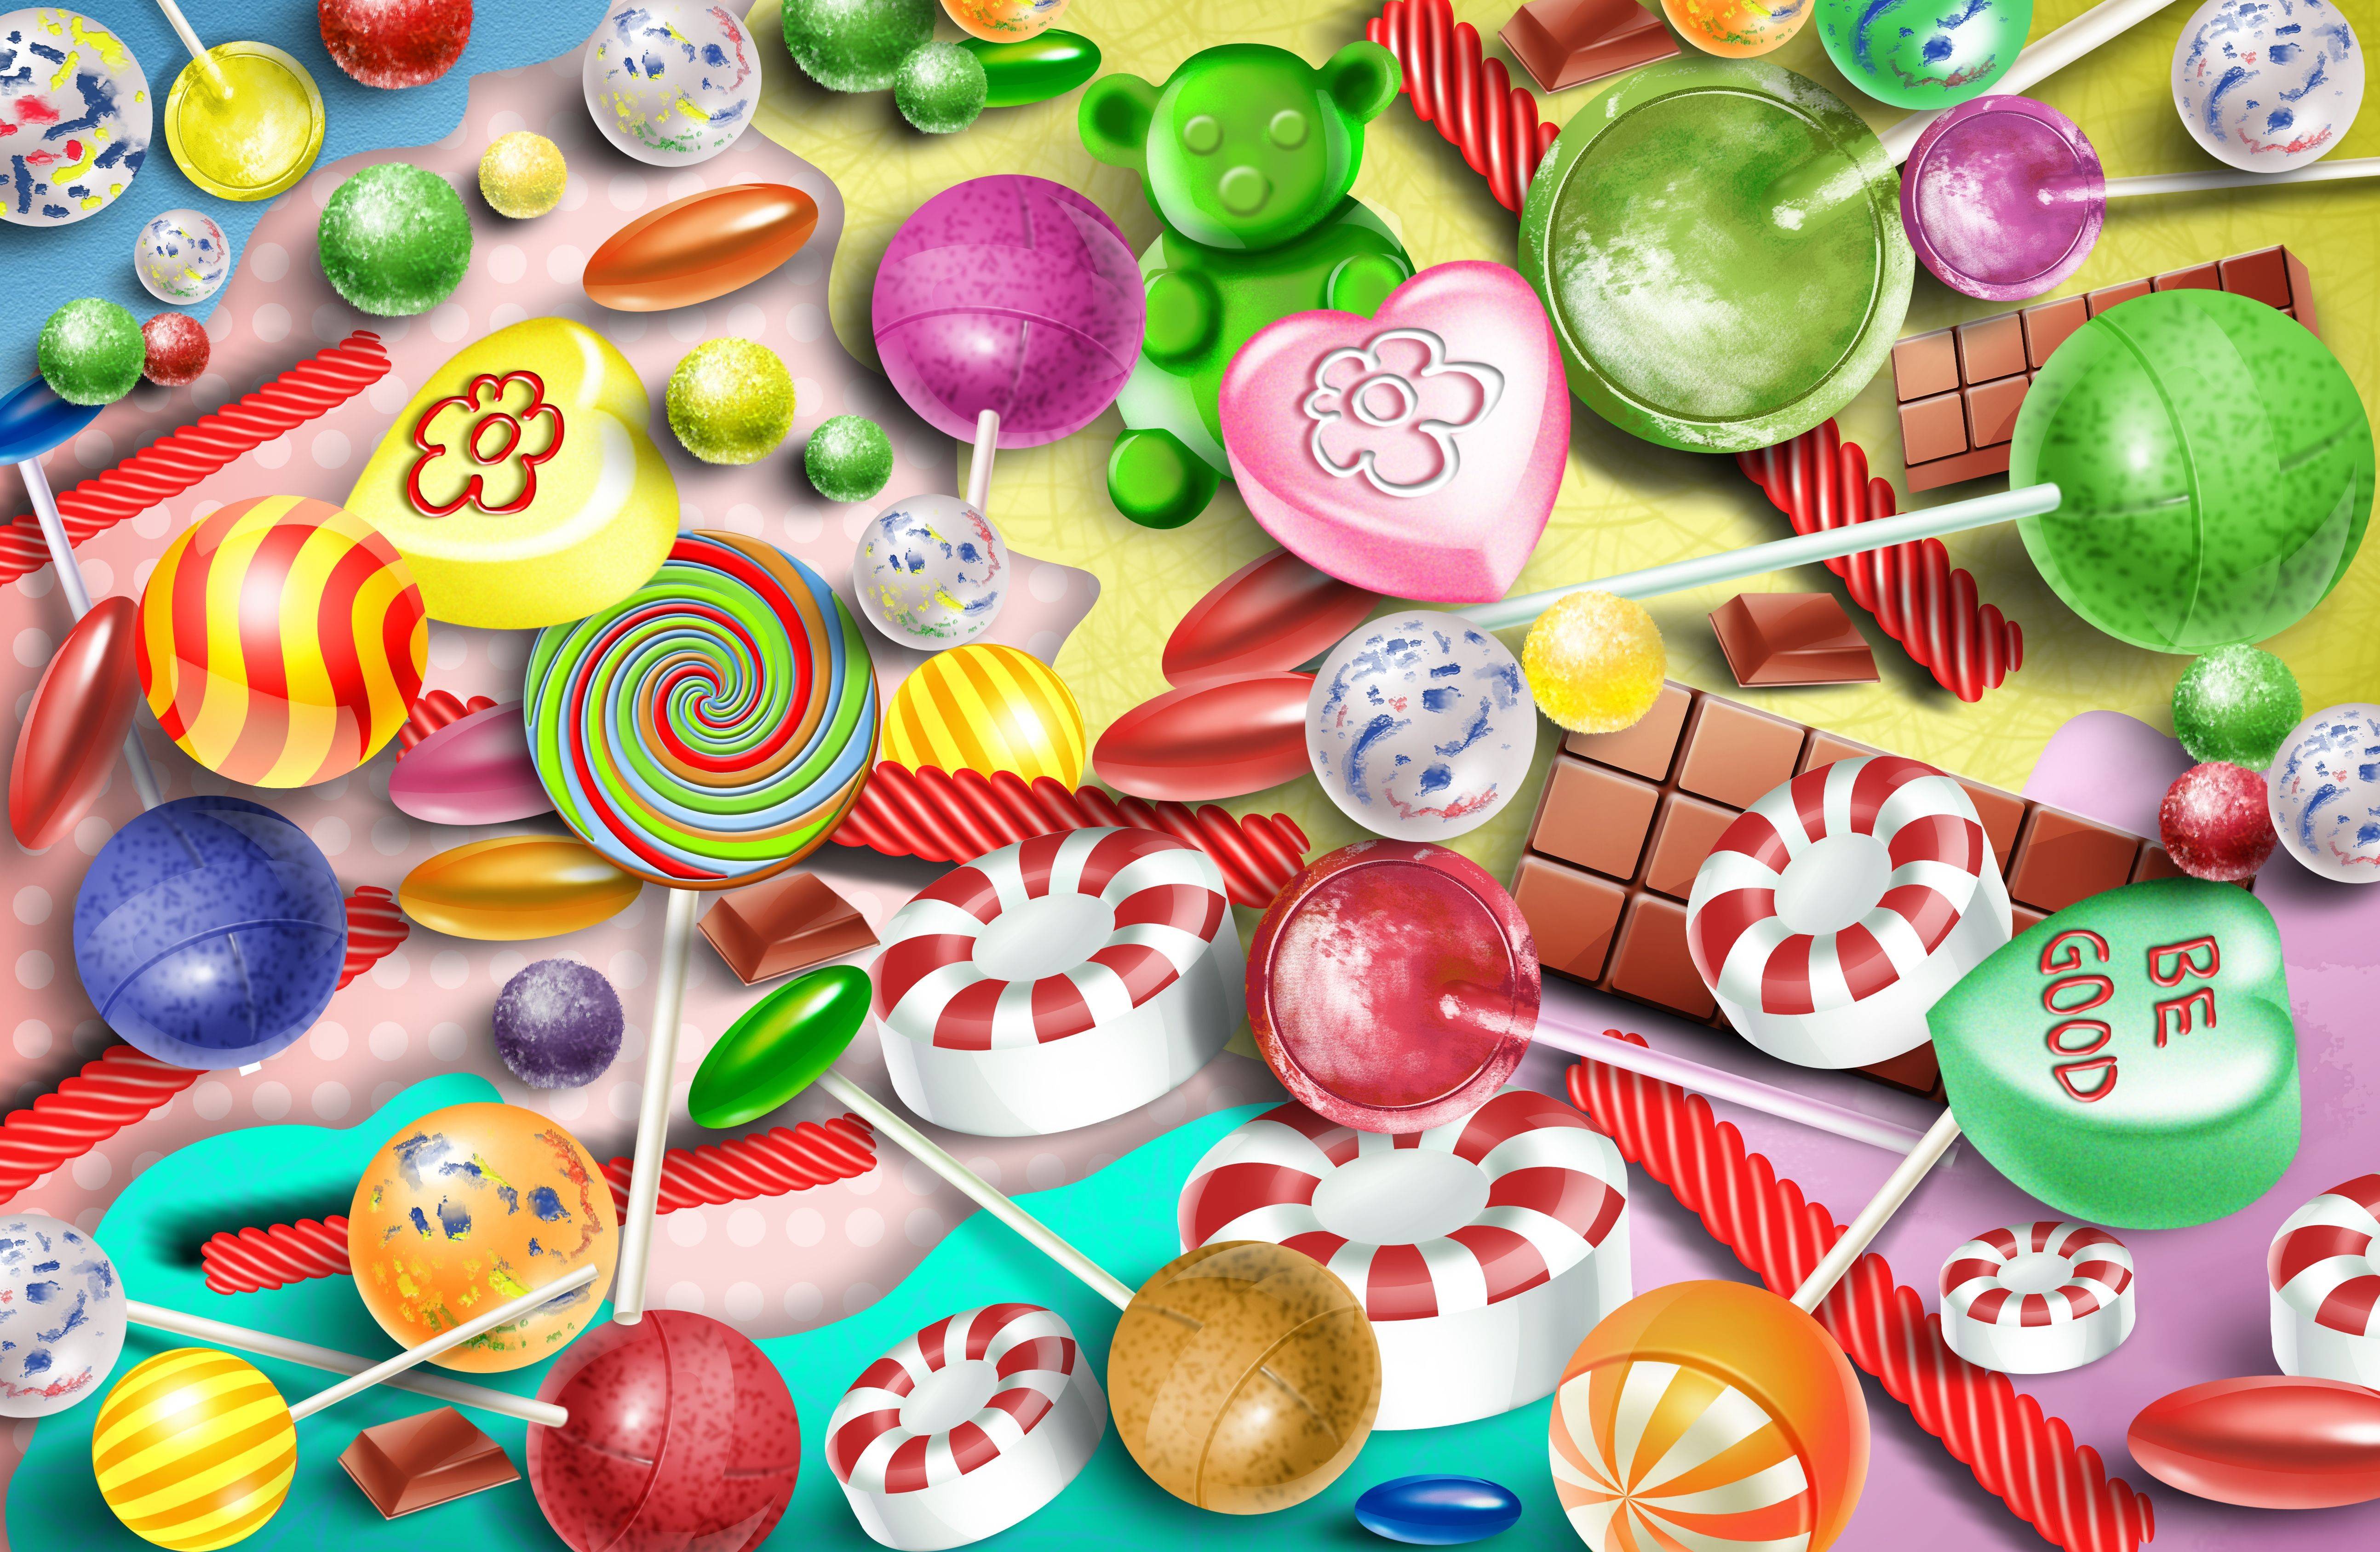 Candy Wallpaper Backgrounds - Candy Wallpaper Desktop - HD Wallpaper 